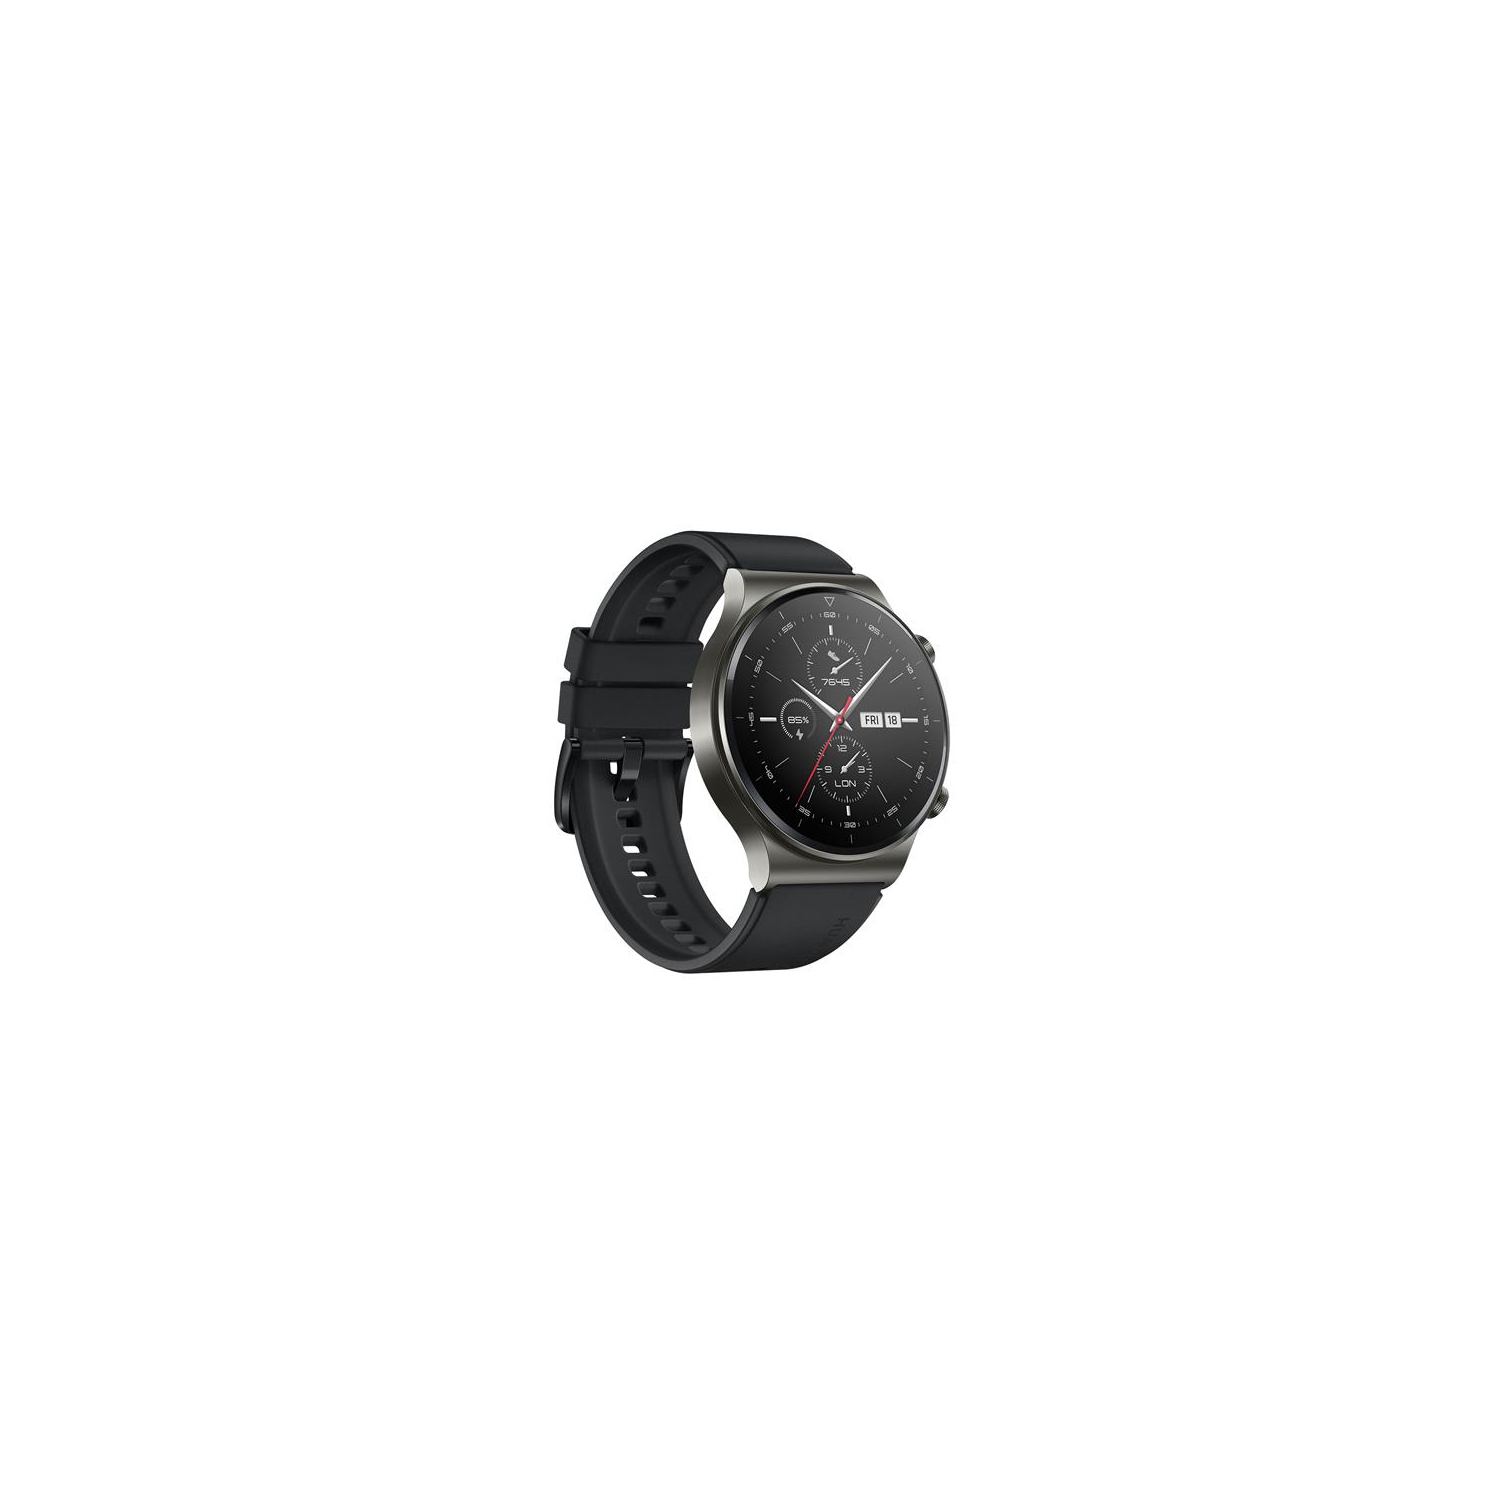 |Huawei Watch |GT 2 Pro| Smartwatch |46MM |Night Black |Fluor elastomer Strap|